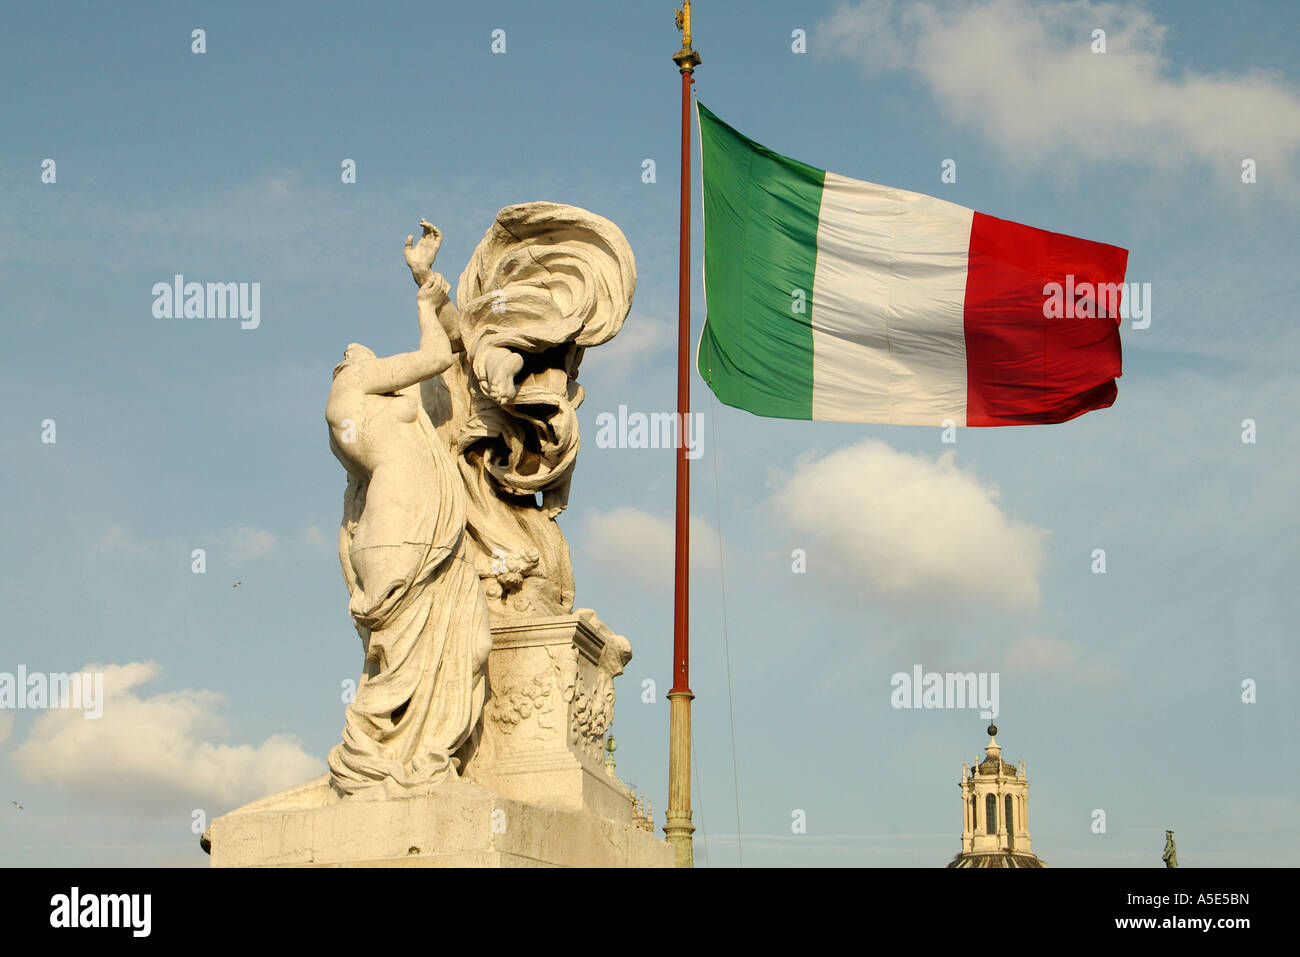 Rome Italie drapeau italien Il Tricolore survolant le Vittoriano le monument de Vittorio Emanuele II de Savoie, premier roi d'elle Banque D'Images